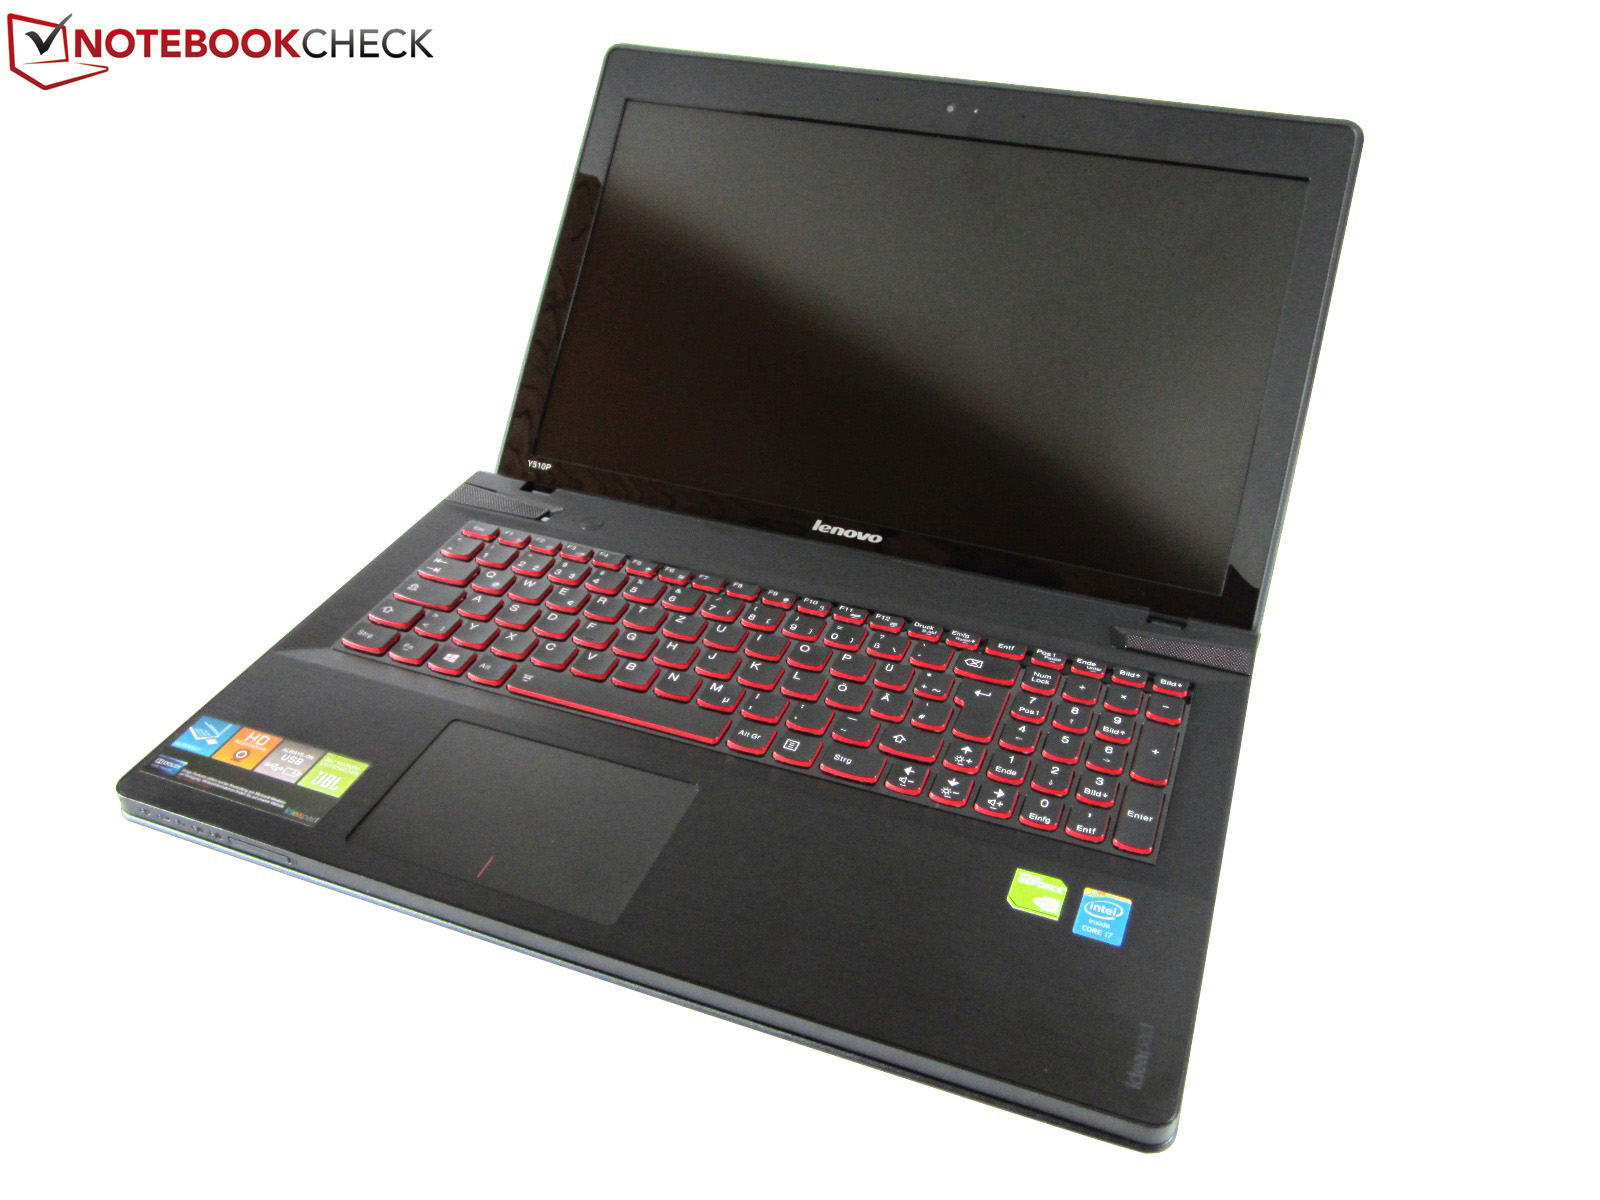 Ноутбук Lenovo Y510p Купить